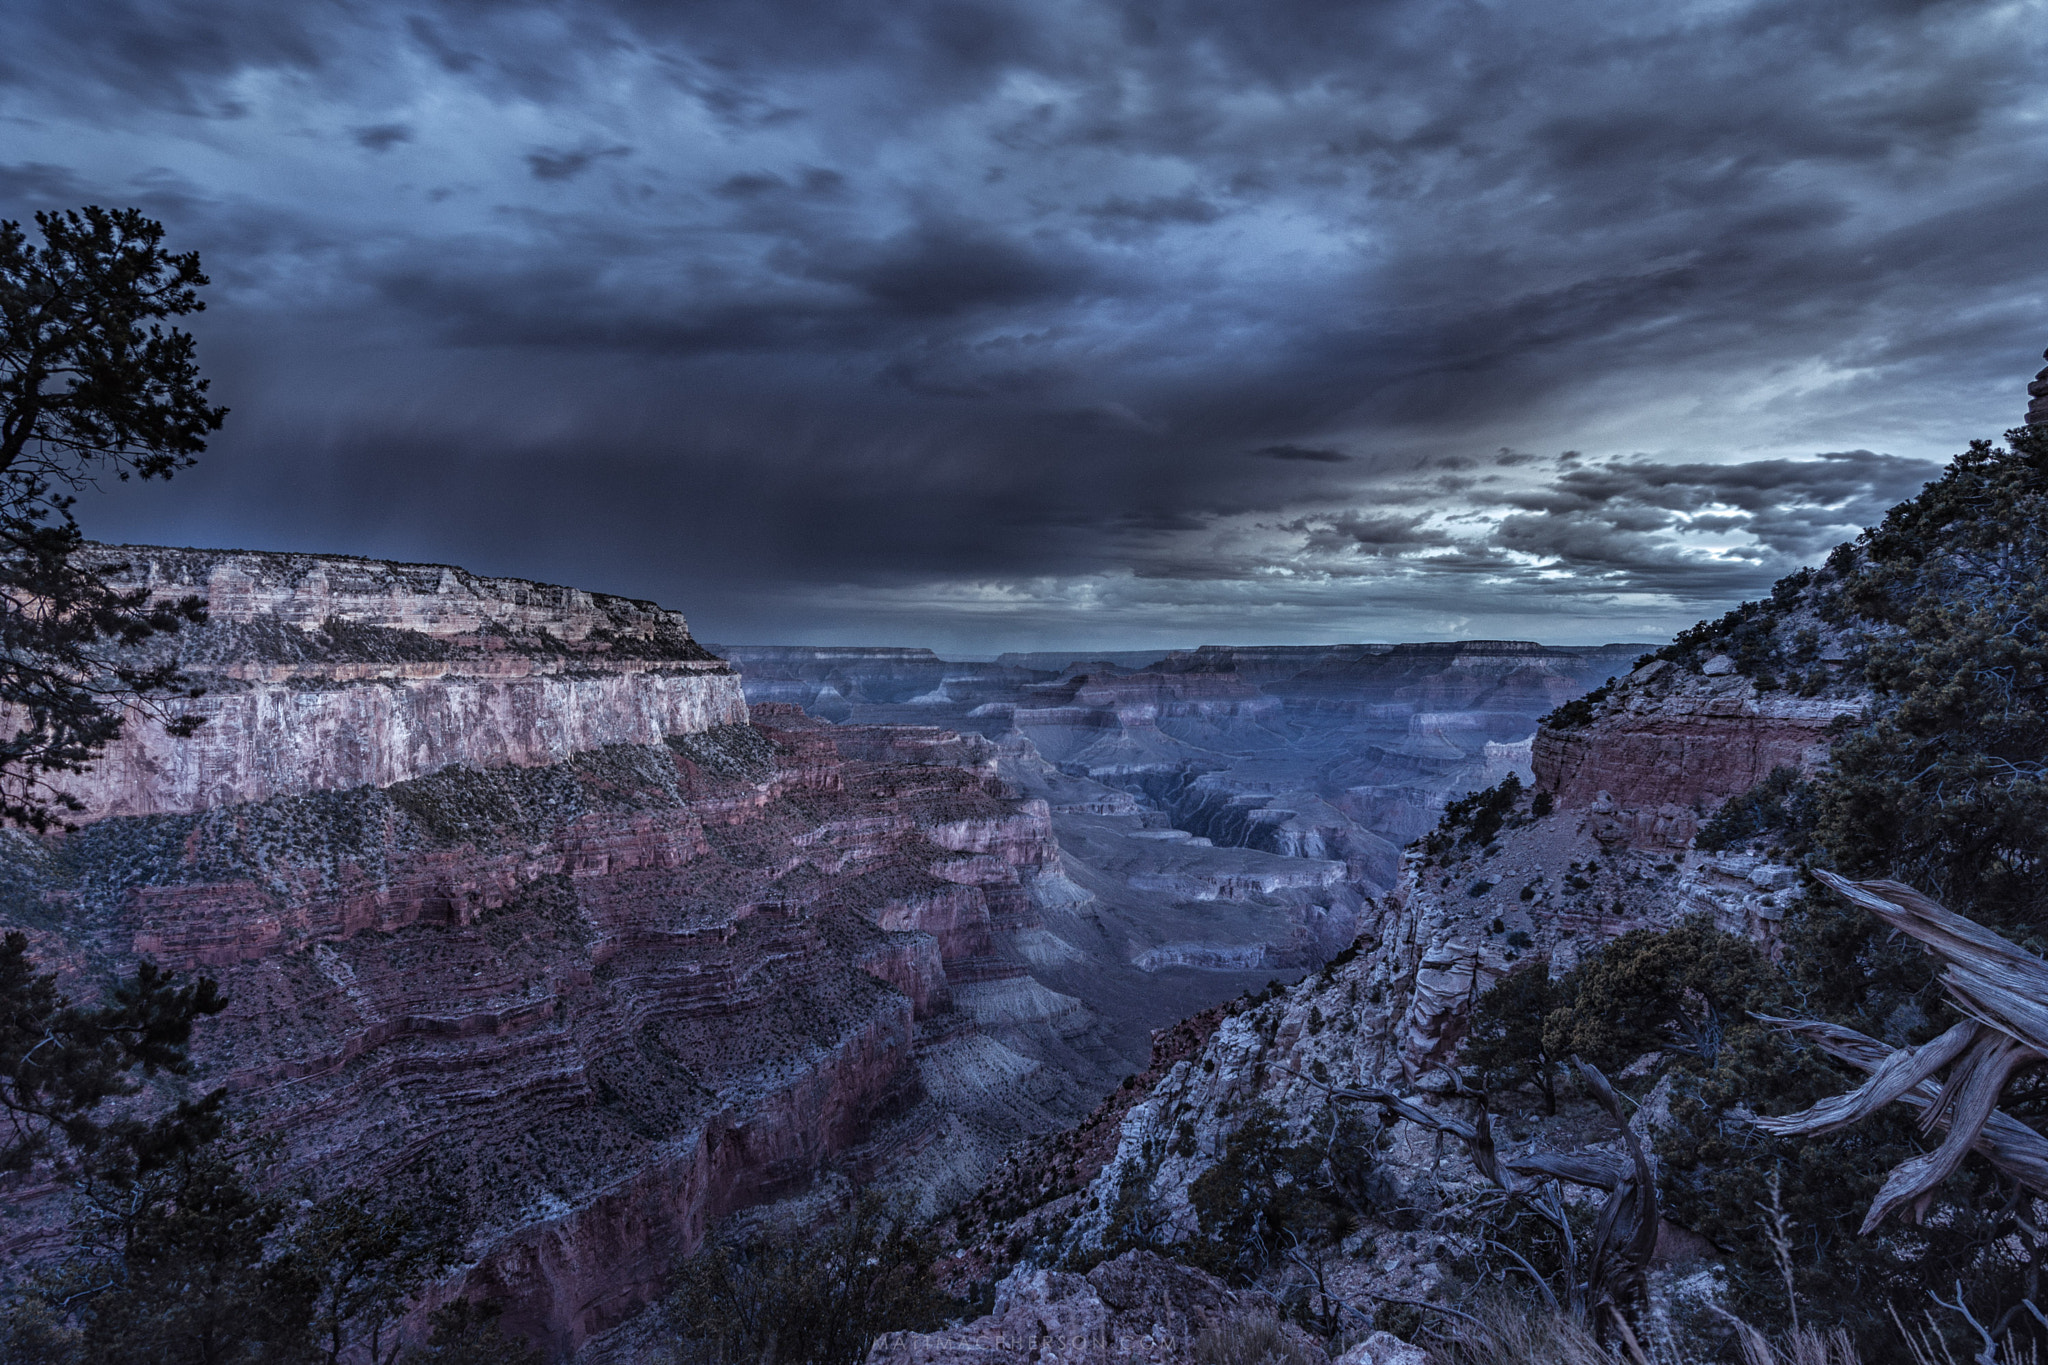 Nikon D5100 sample photo. Moonlit grand canyon with stormcloud, arizona. photography